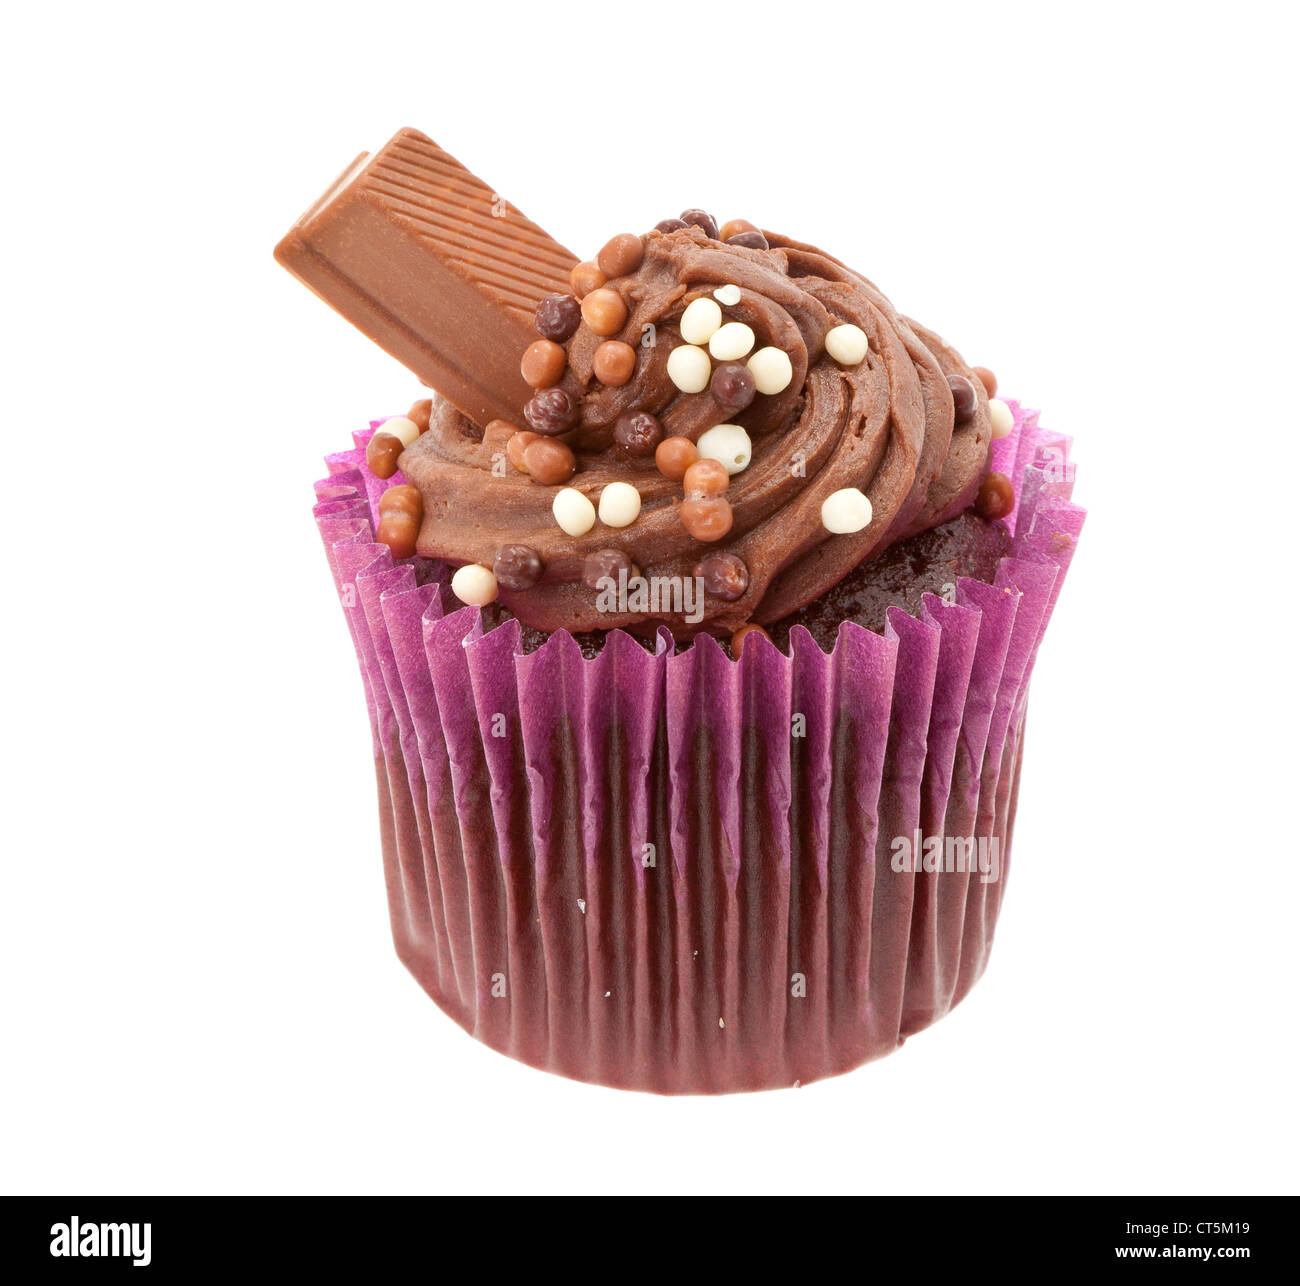 Cup cake au chocolat avec glaçage buttercream et une barre de chocolat - studio photo avec un fond blanc Banque D'Images